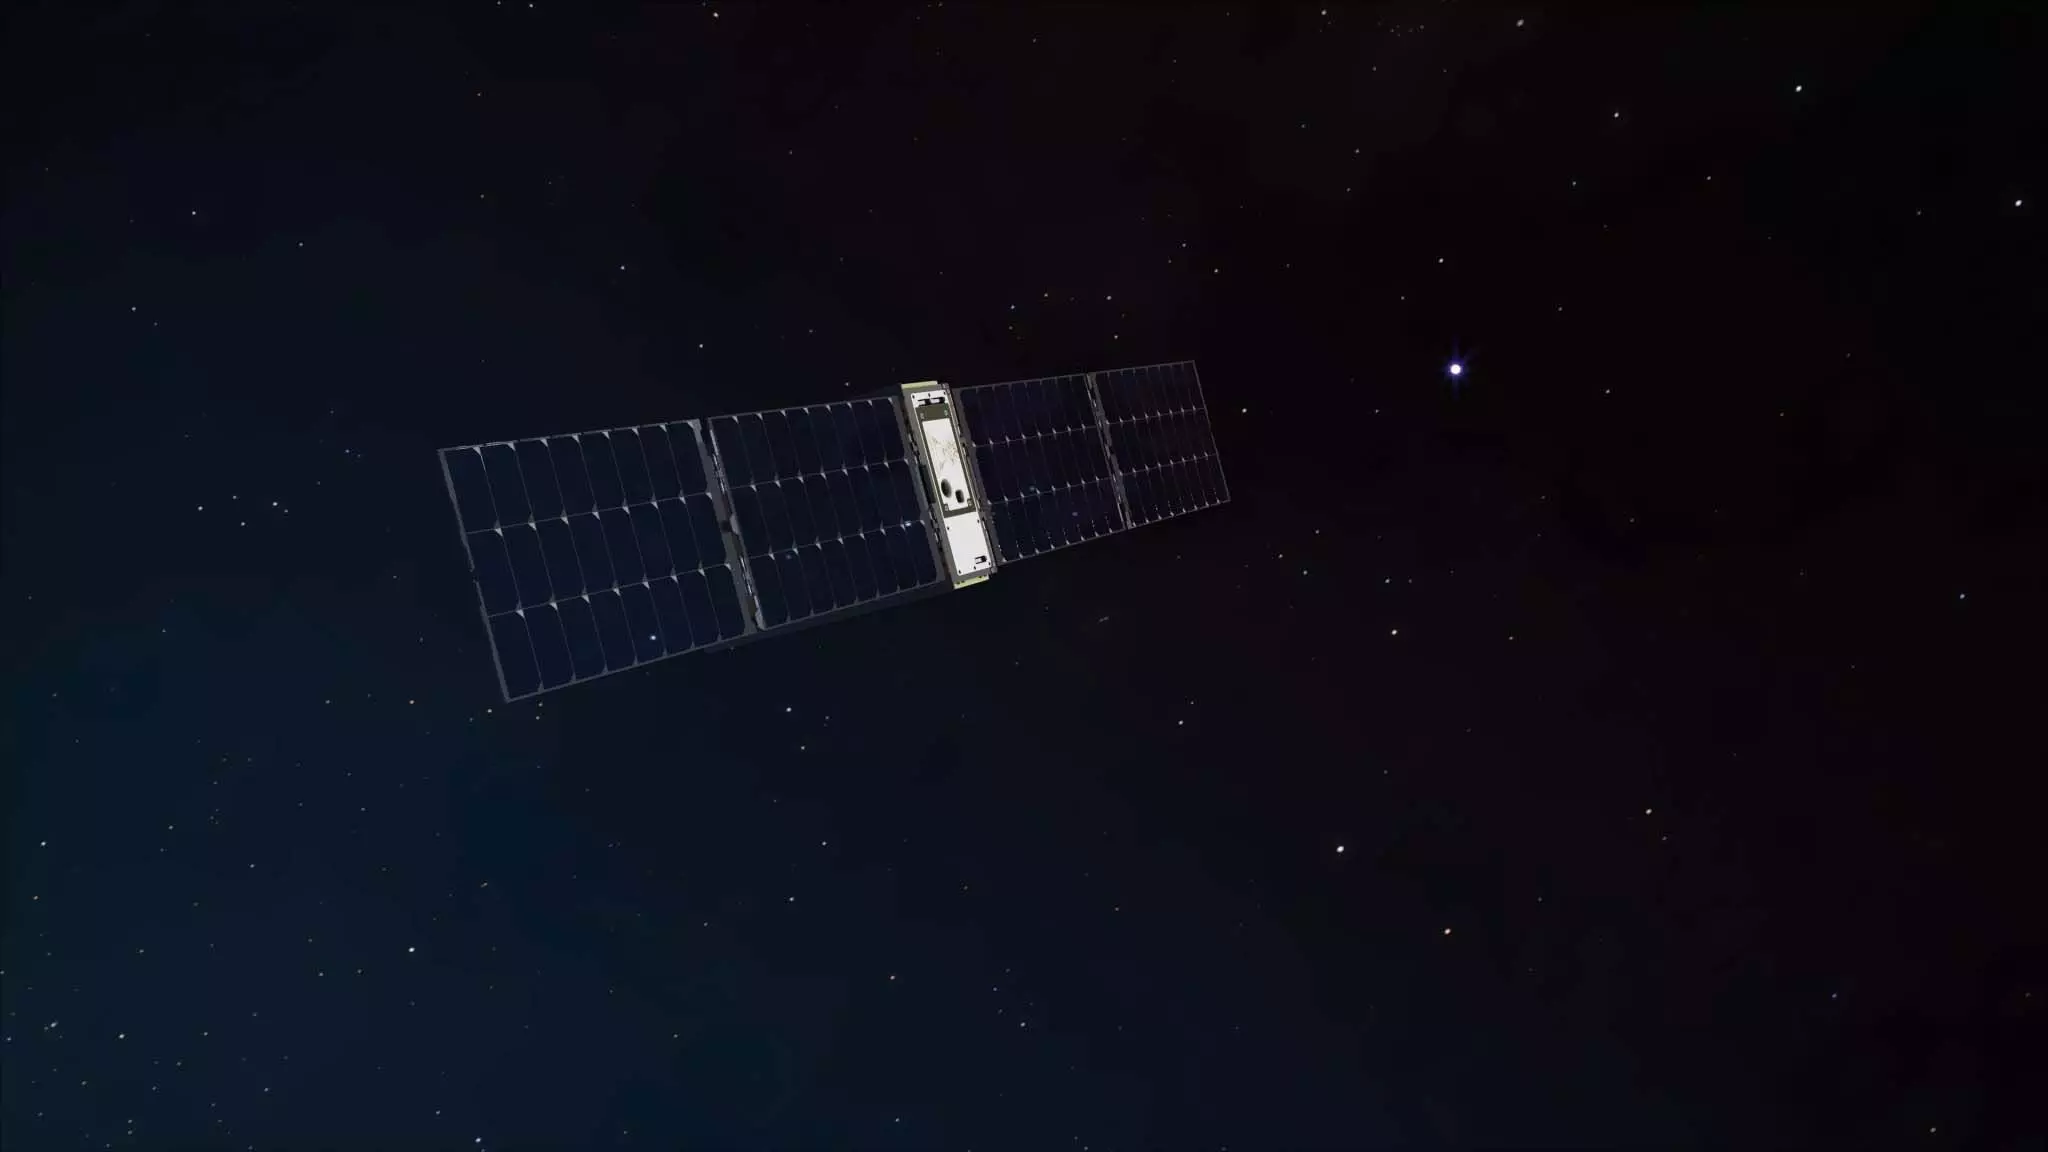 नासा ने छोटा सैटेलाइट लॉन्च किया, ब्रह्मांडीय विस्फोटों के रहस्यों को करेगा उजागर